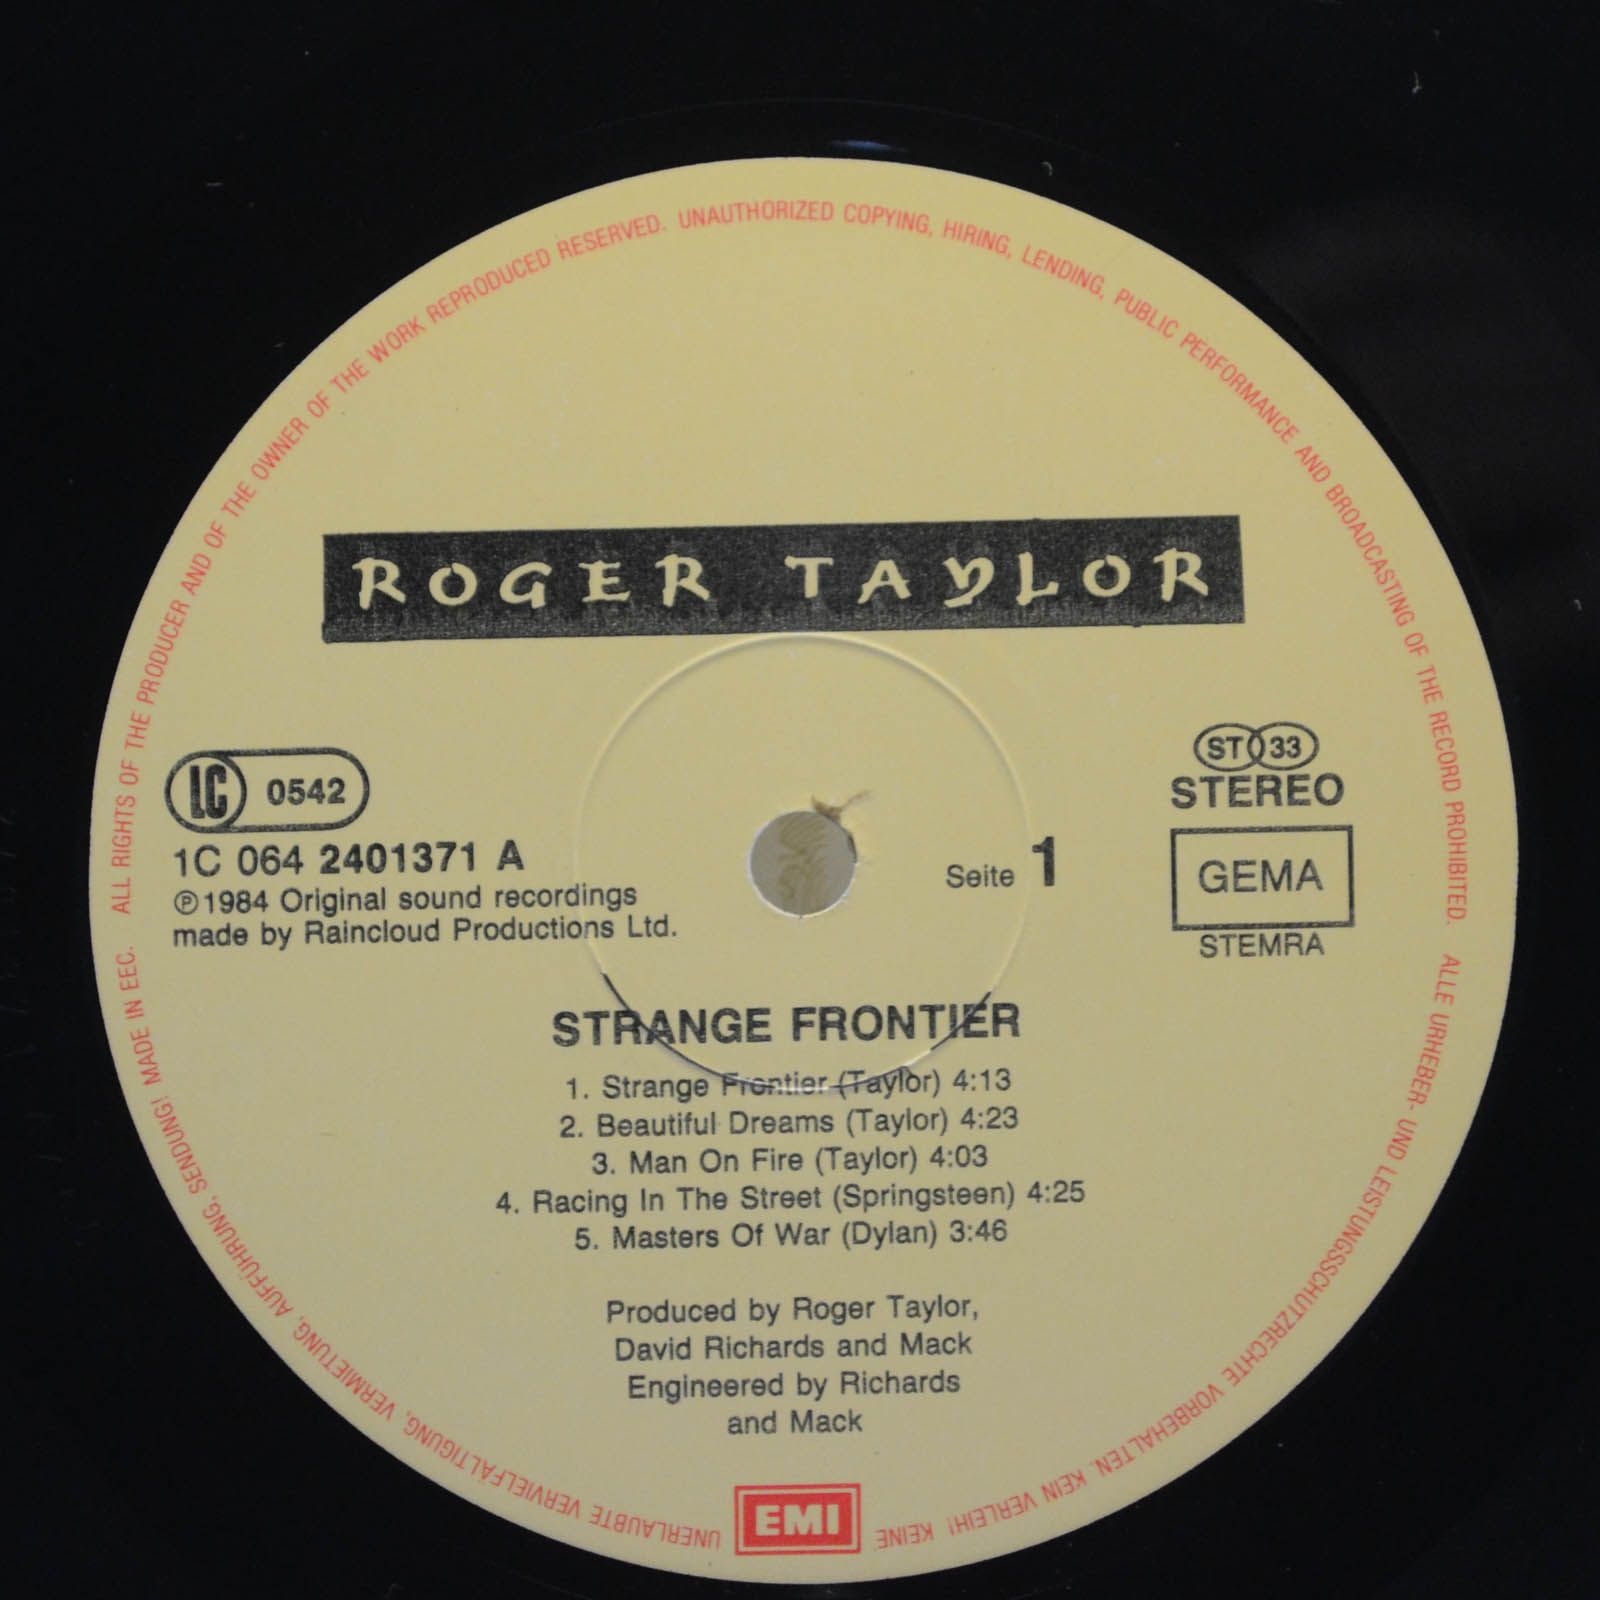 Roger Taylor — Strange Frontier, 1984